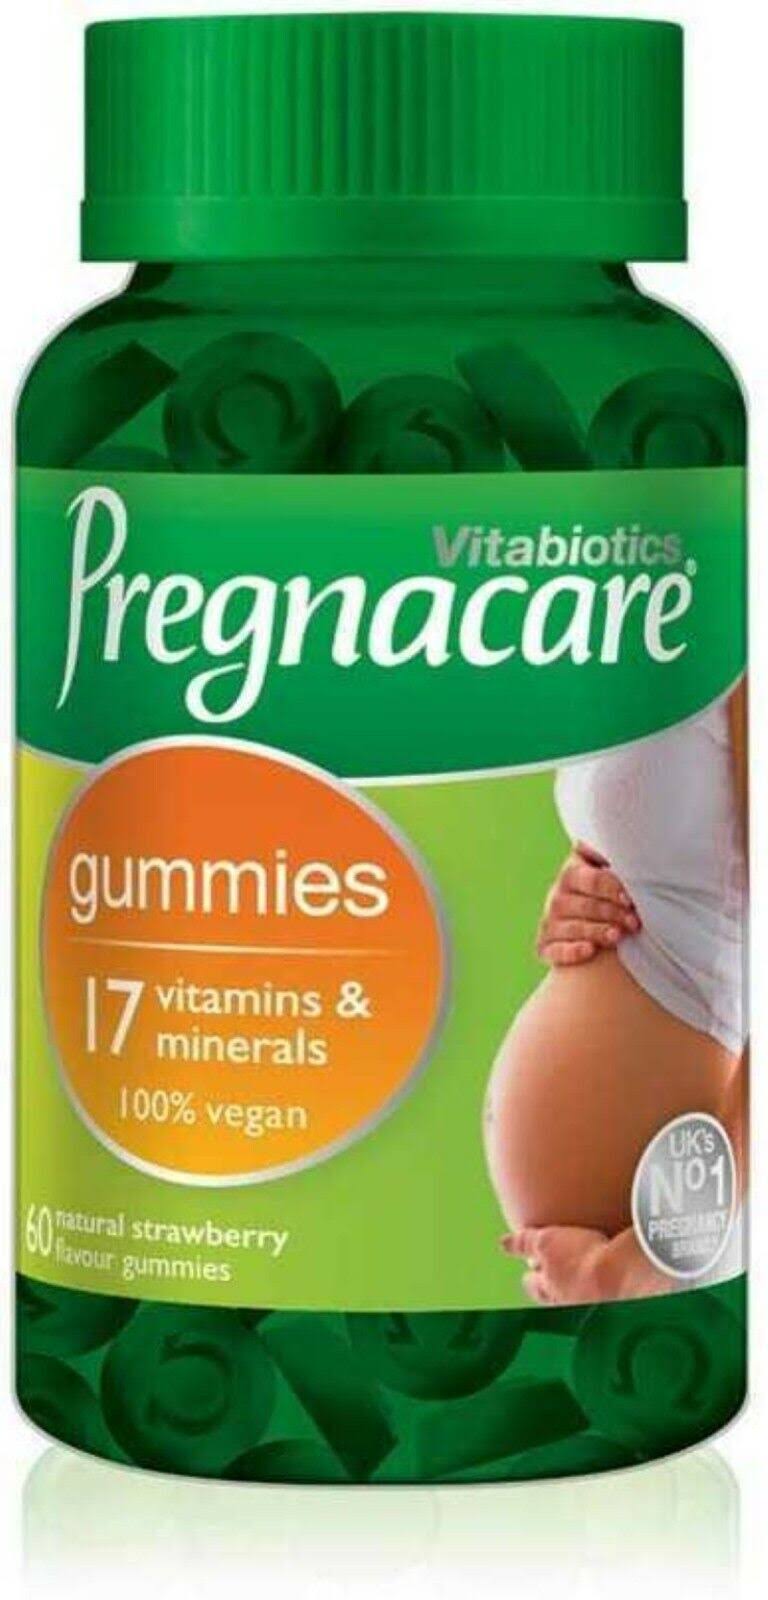 Vitabiotics Pregnacare Gummies - Natural Strawberry Flavour, 60ct